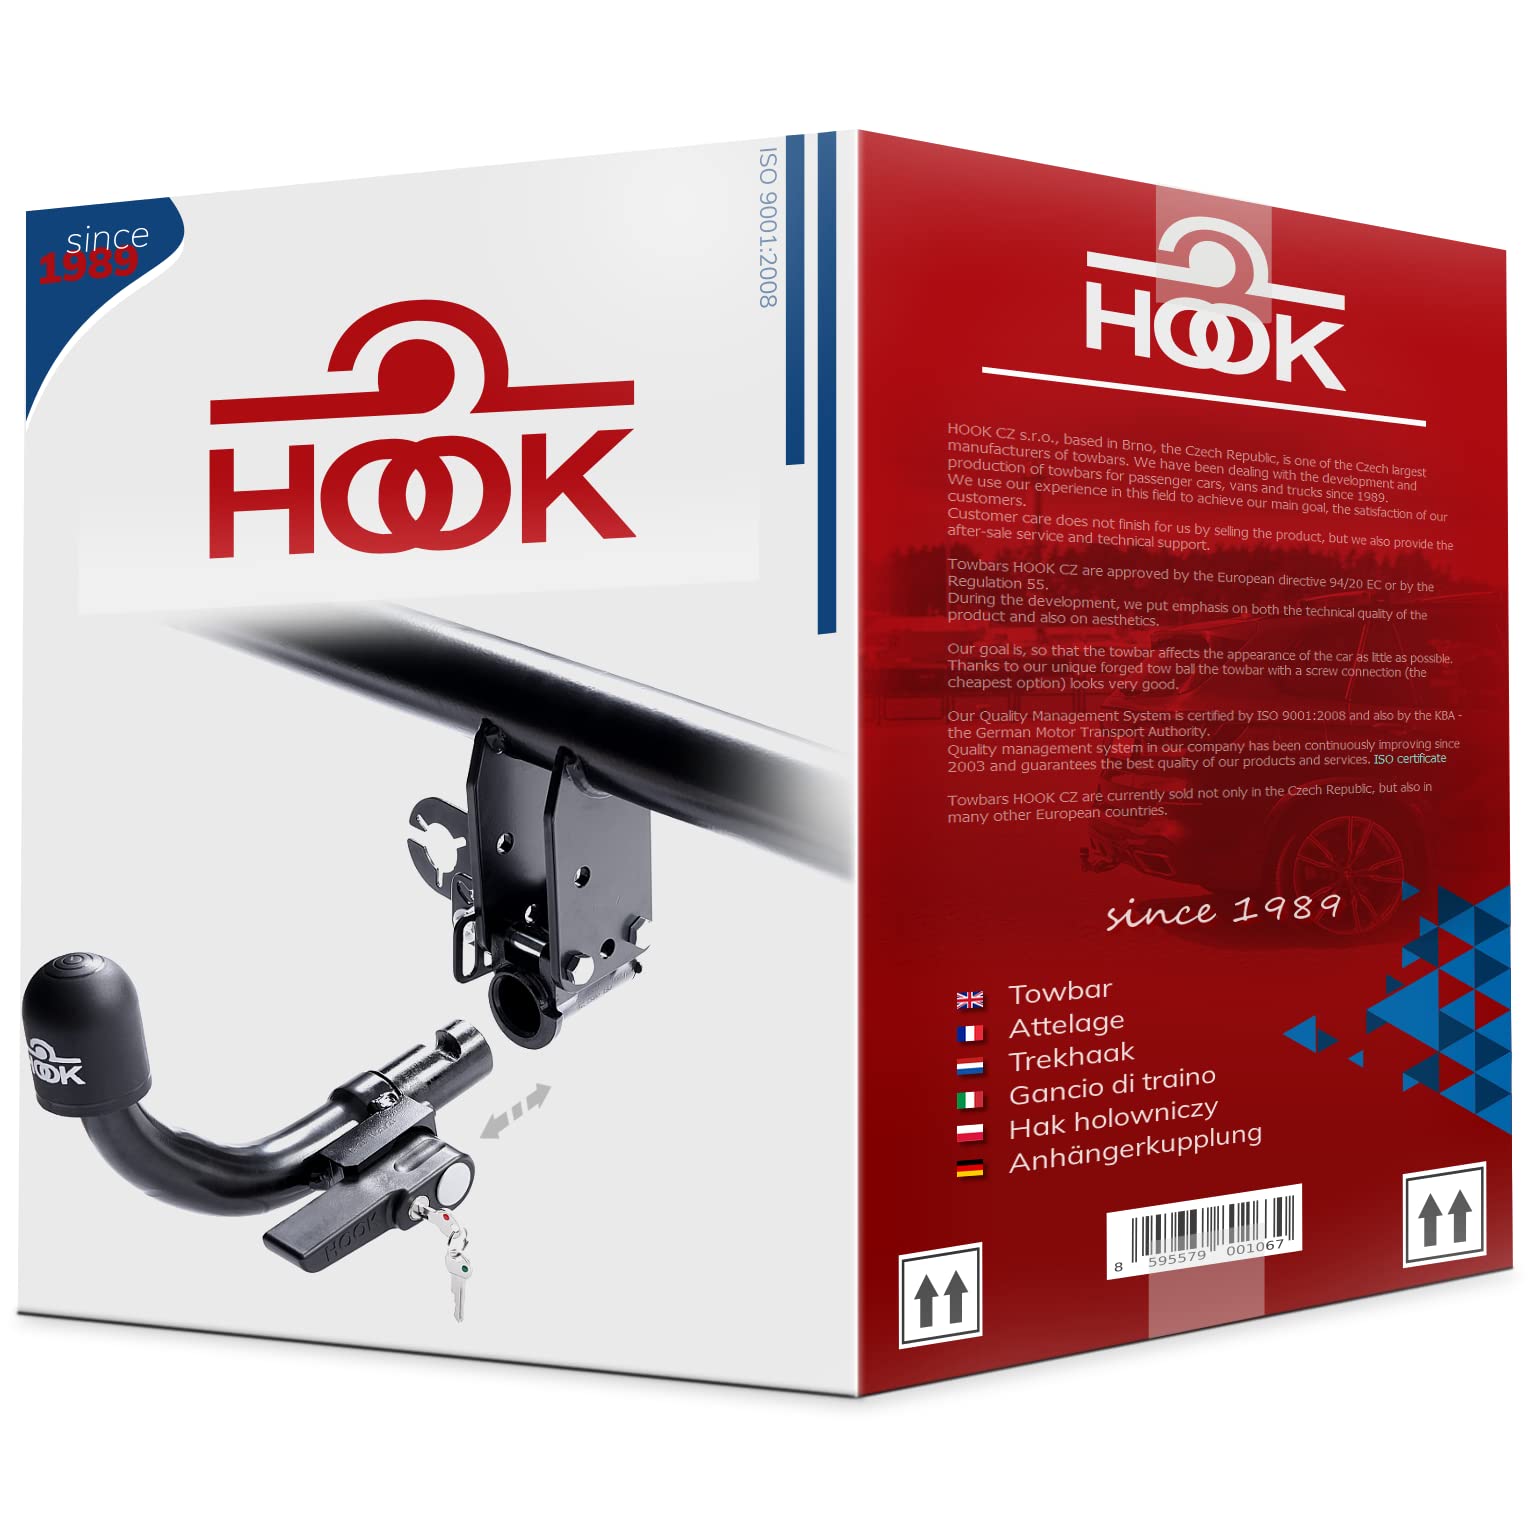 Hook horizontal abnehmbare AHK Anhängerkupplung für BMW 5er F11 Touring Kombi 2010-2017 + universell Elektrosatz 13-polig von Hook